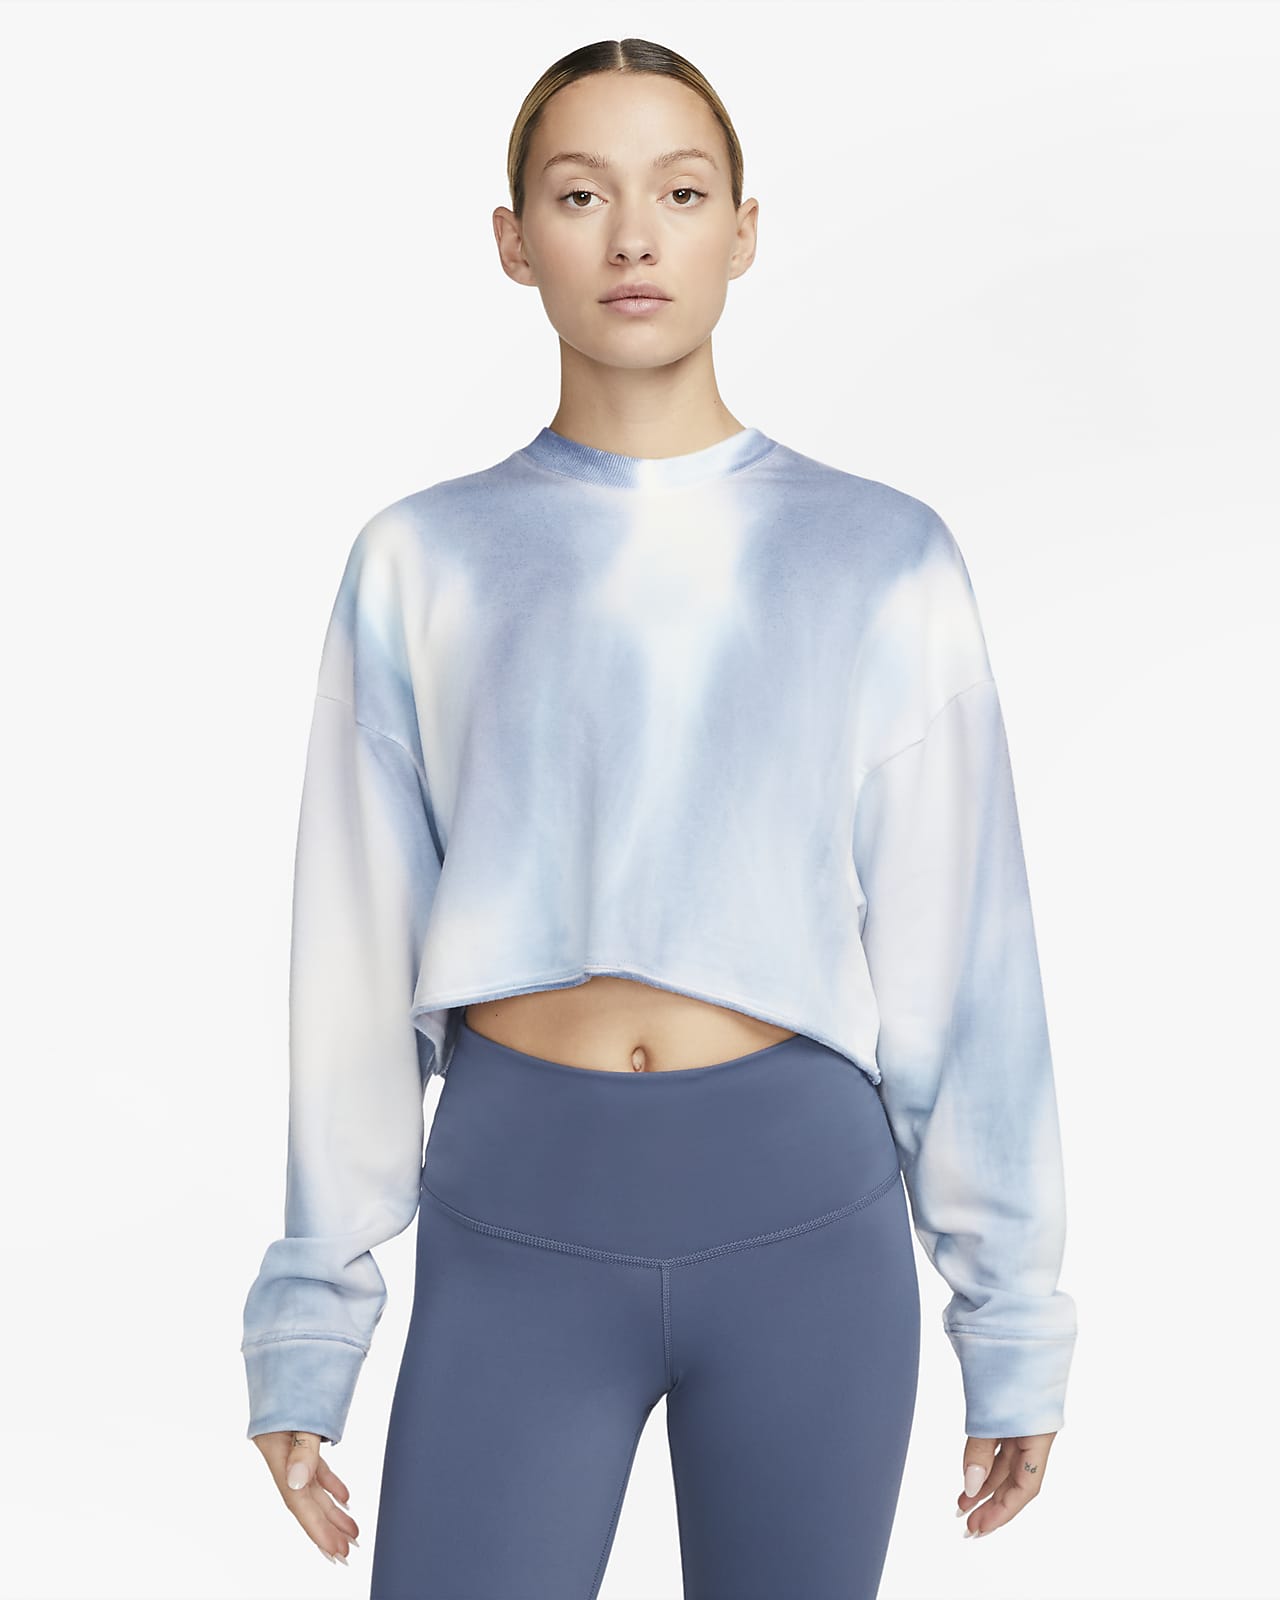 Sudadera corta tejido Fleece con cuello redondo para mujer Yoga Luxe. Nike.com